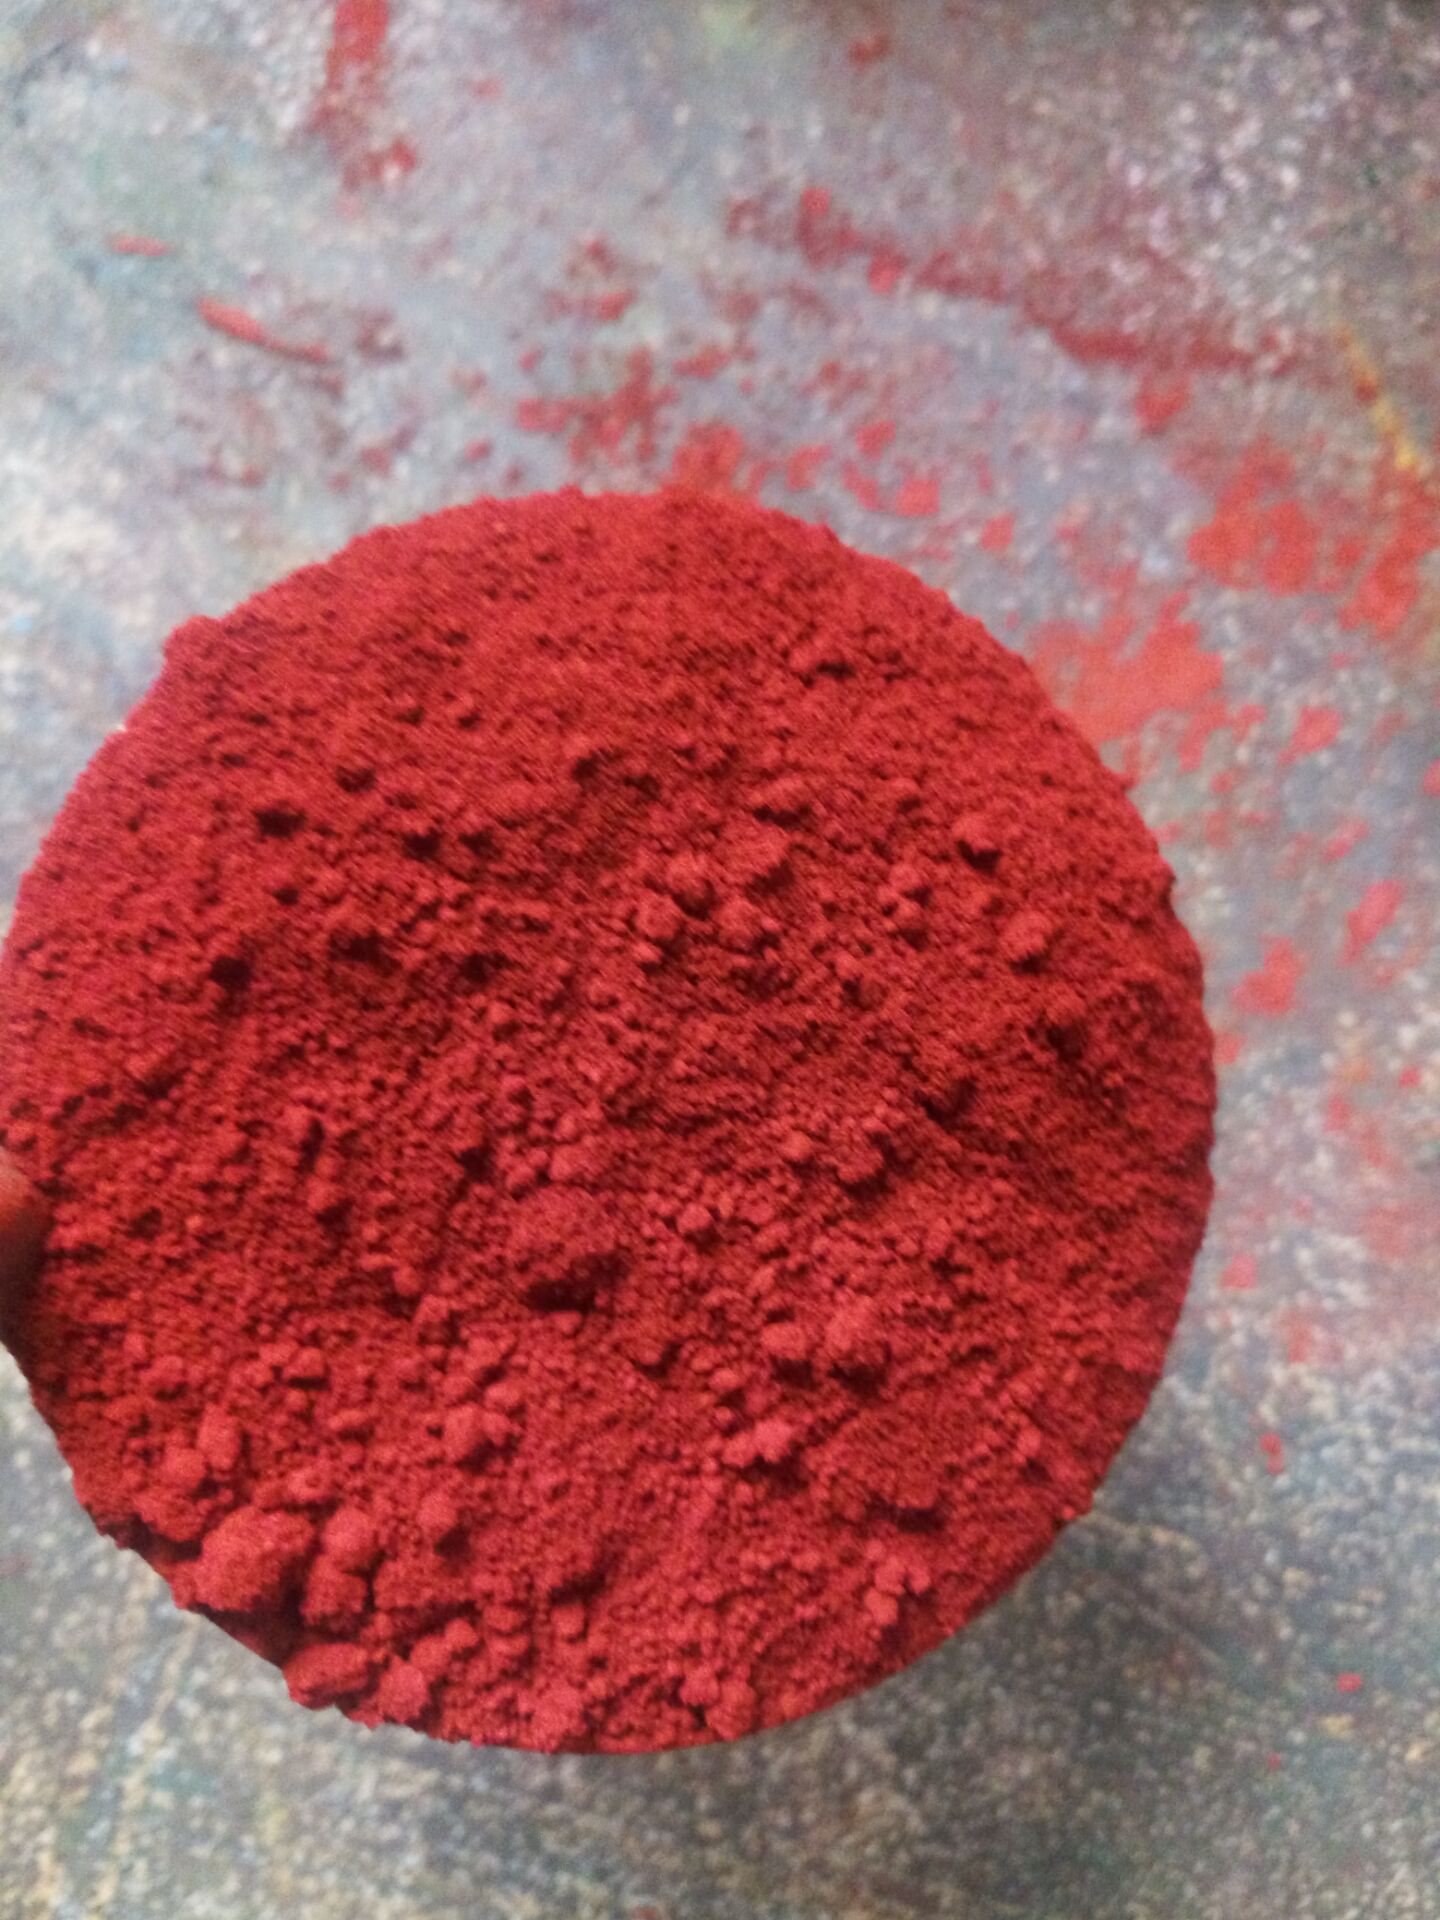 水磨石用氧化铁红 陶瓷用铁红 彩色水泥用铁红 彩色